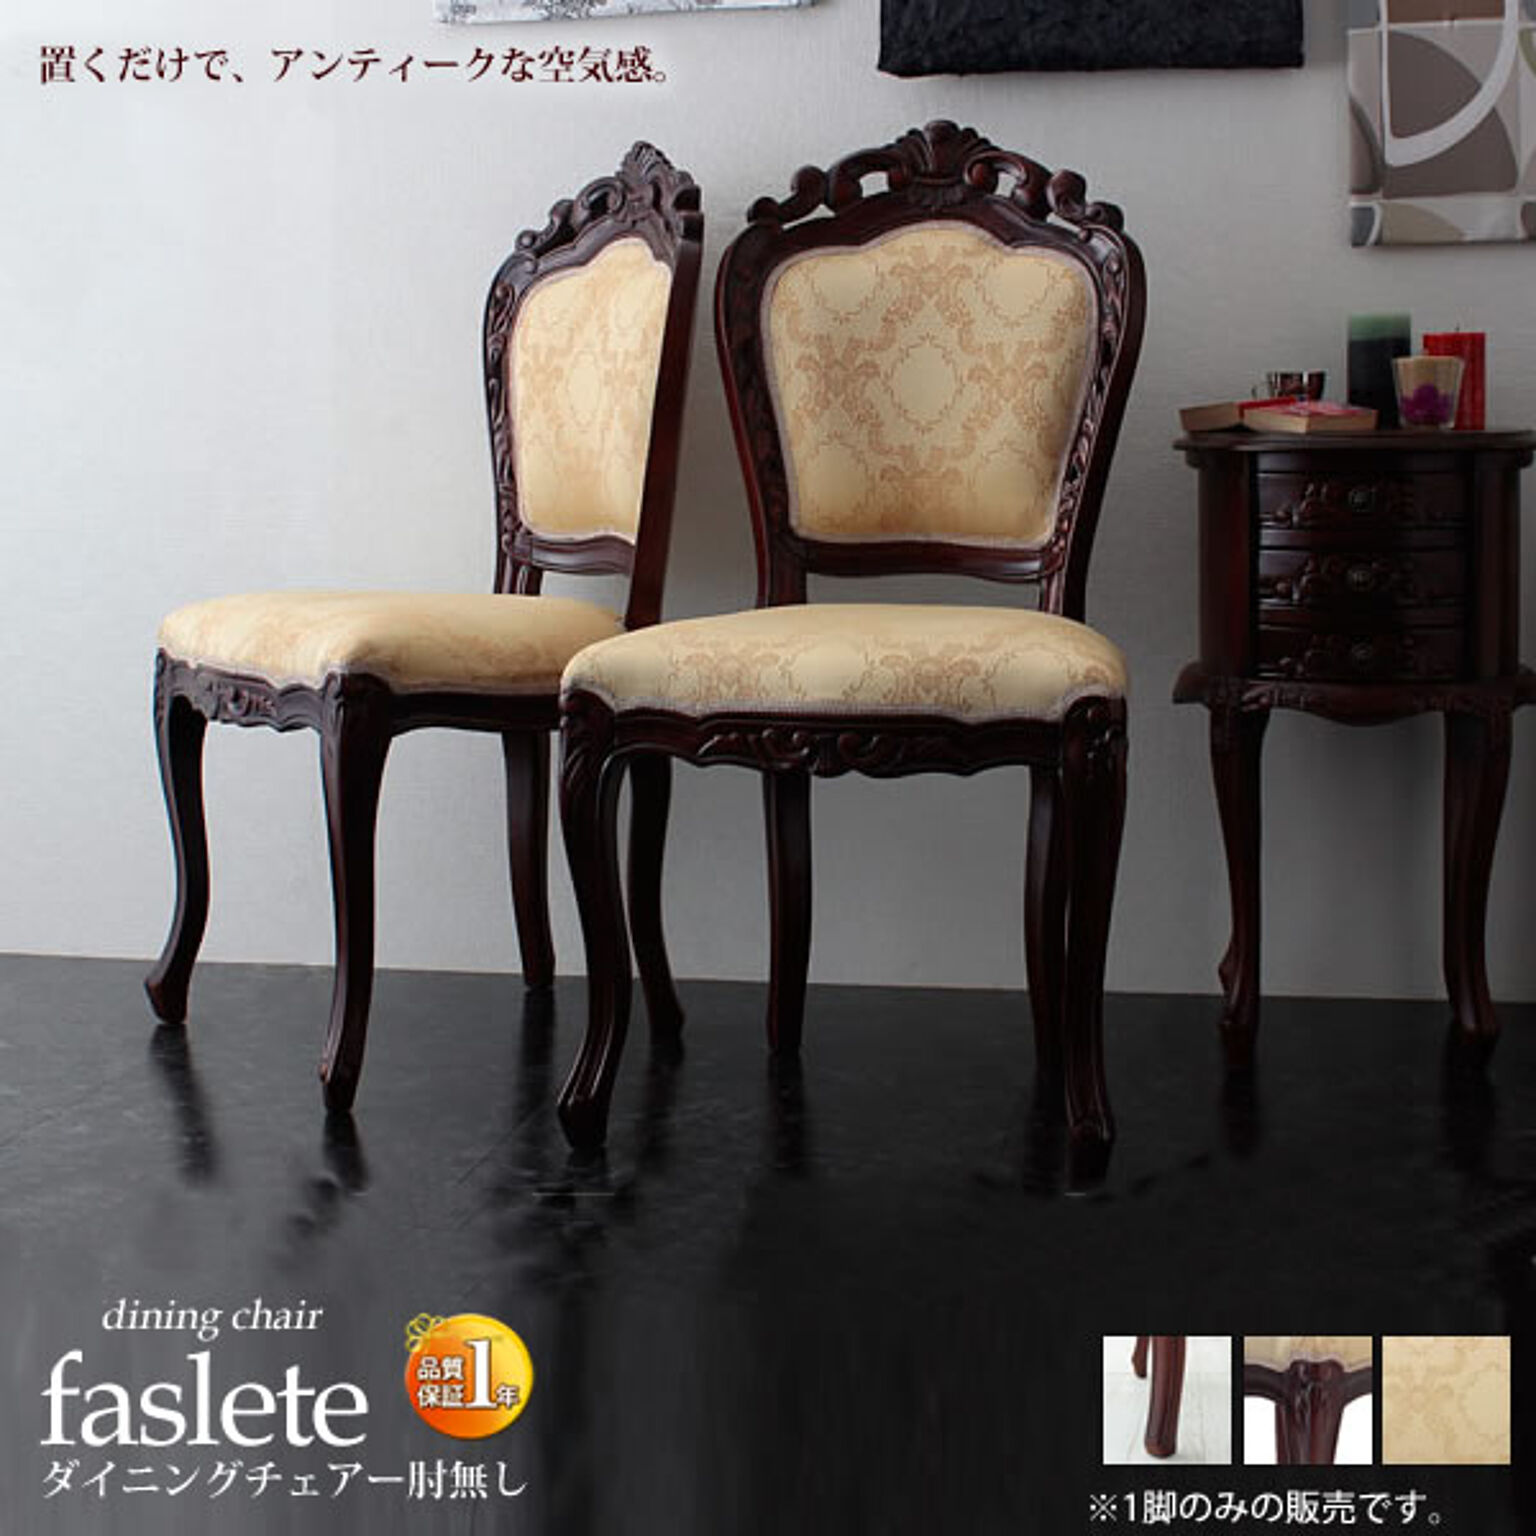 ダイニングチェアー いす イス 椅子【faslete】 ブラウン(brown) (ロマンティック) アンティーク調 ロココ調 クラシック ワークチェアー デスクチェアー 